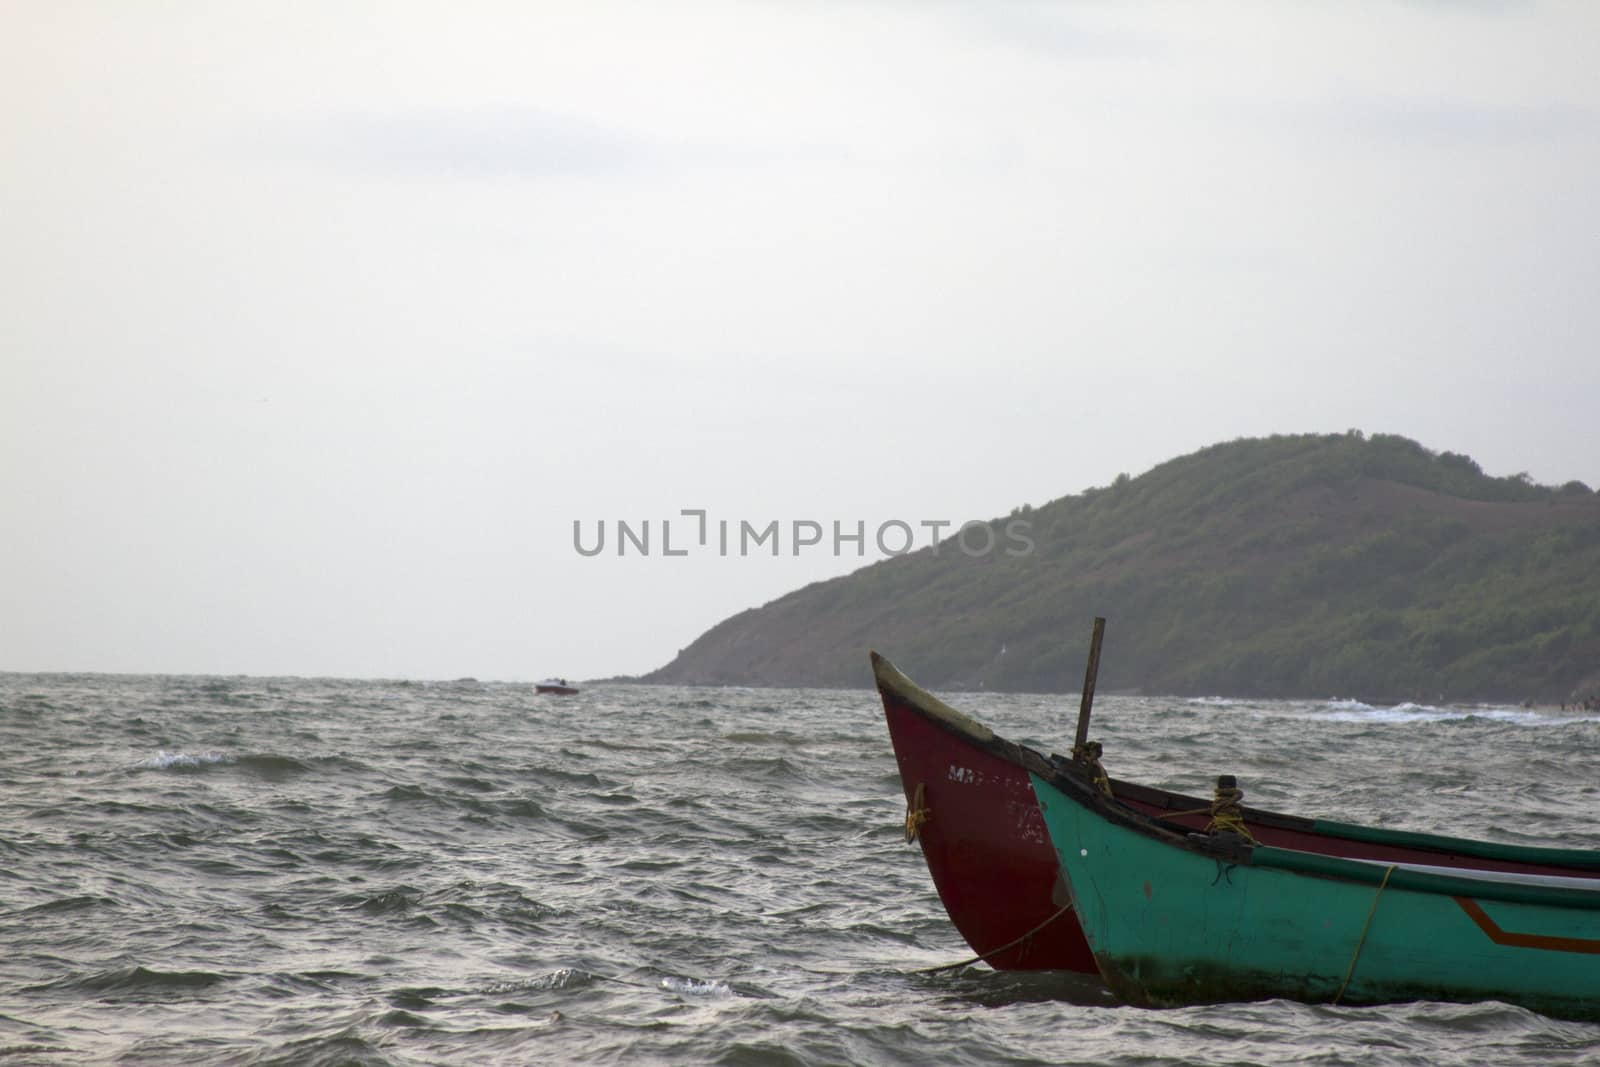 Old fishing boat at sea. India Goa.